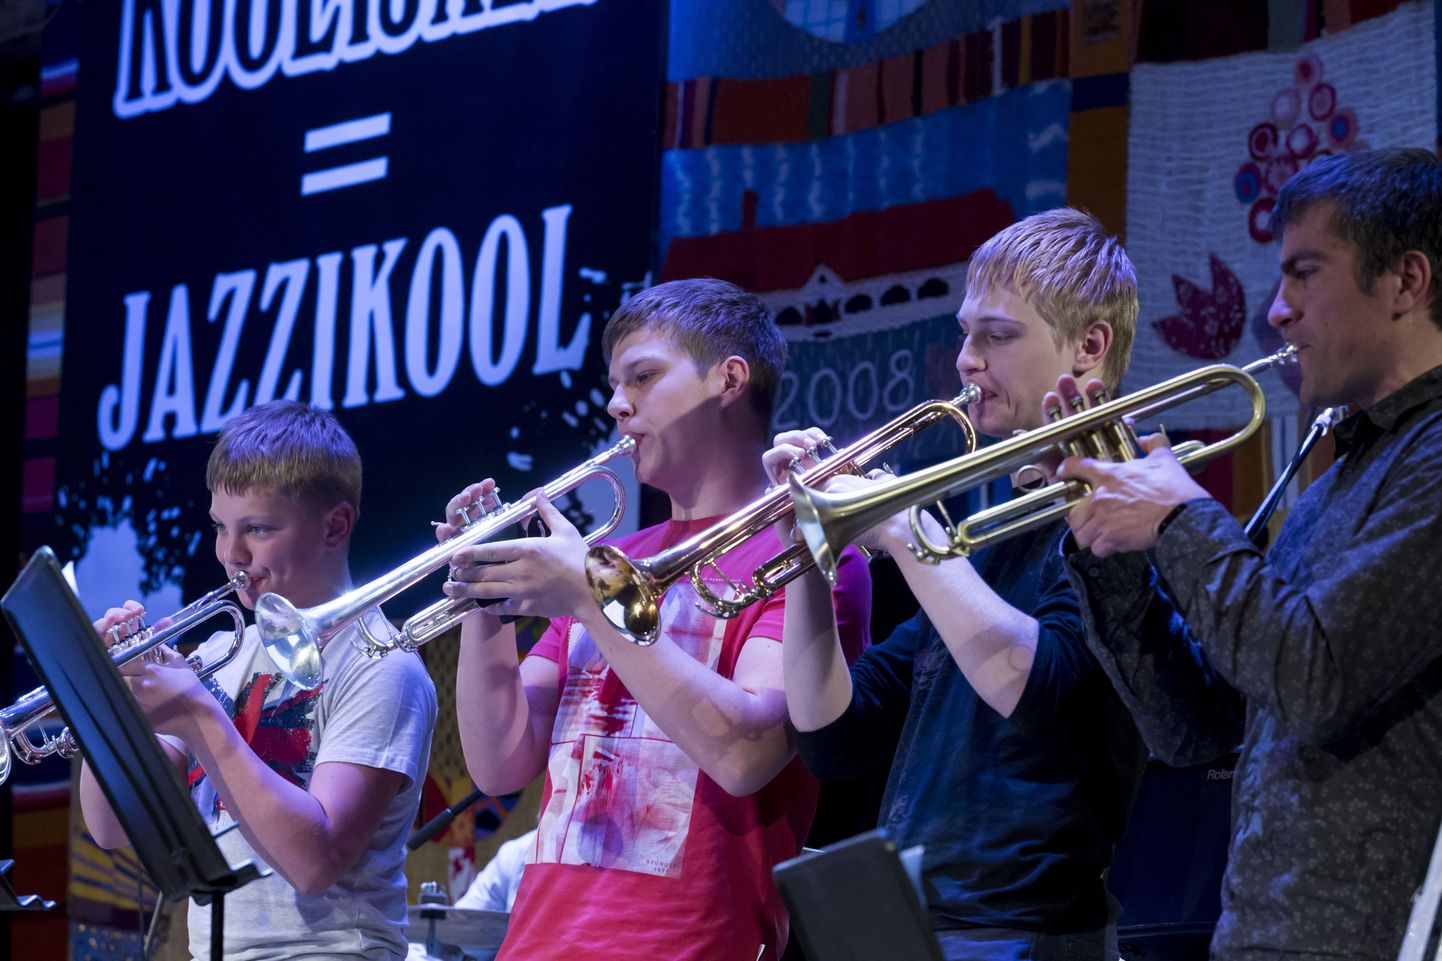 VILJANDI, EESTI, 04JAN15
Festivali "Koolijazz=Jazzikool" ava